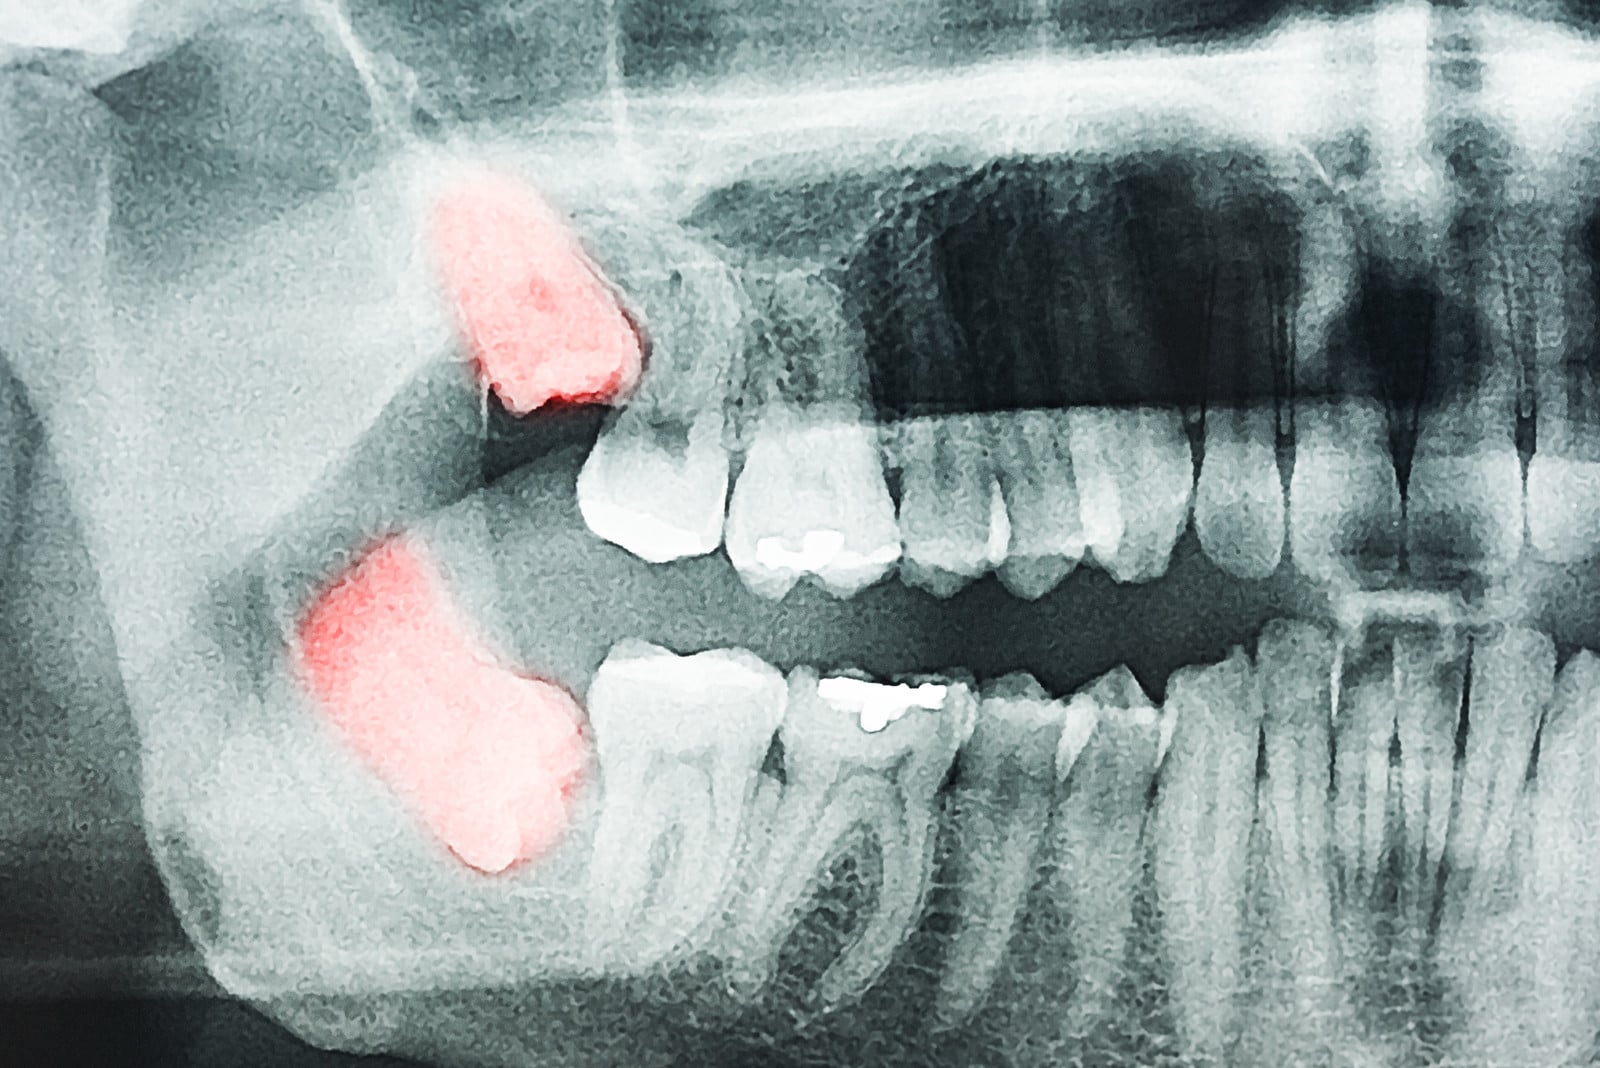 Le trismus après l'extraction d'une dent de sagesse est un symptôme courant